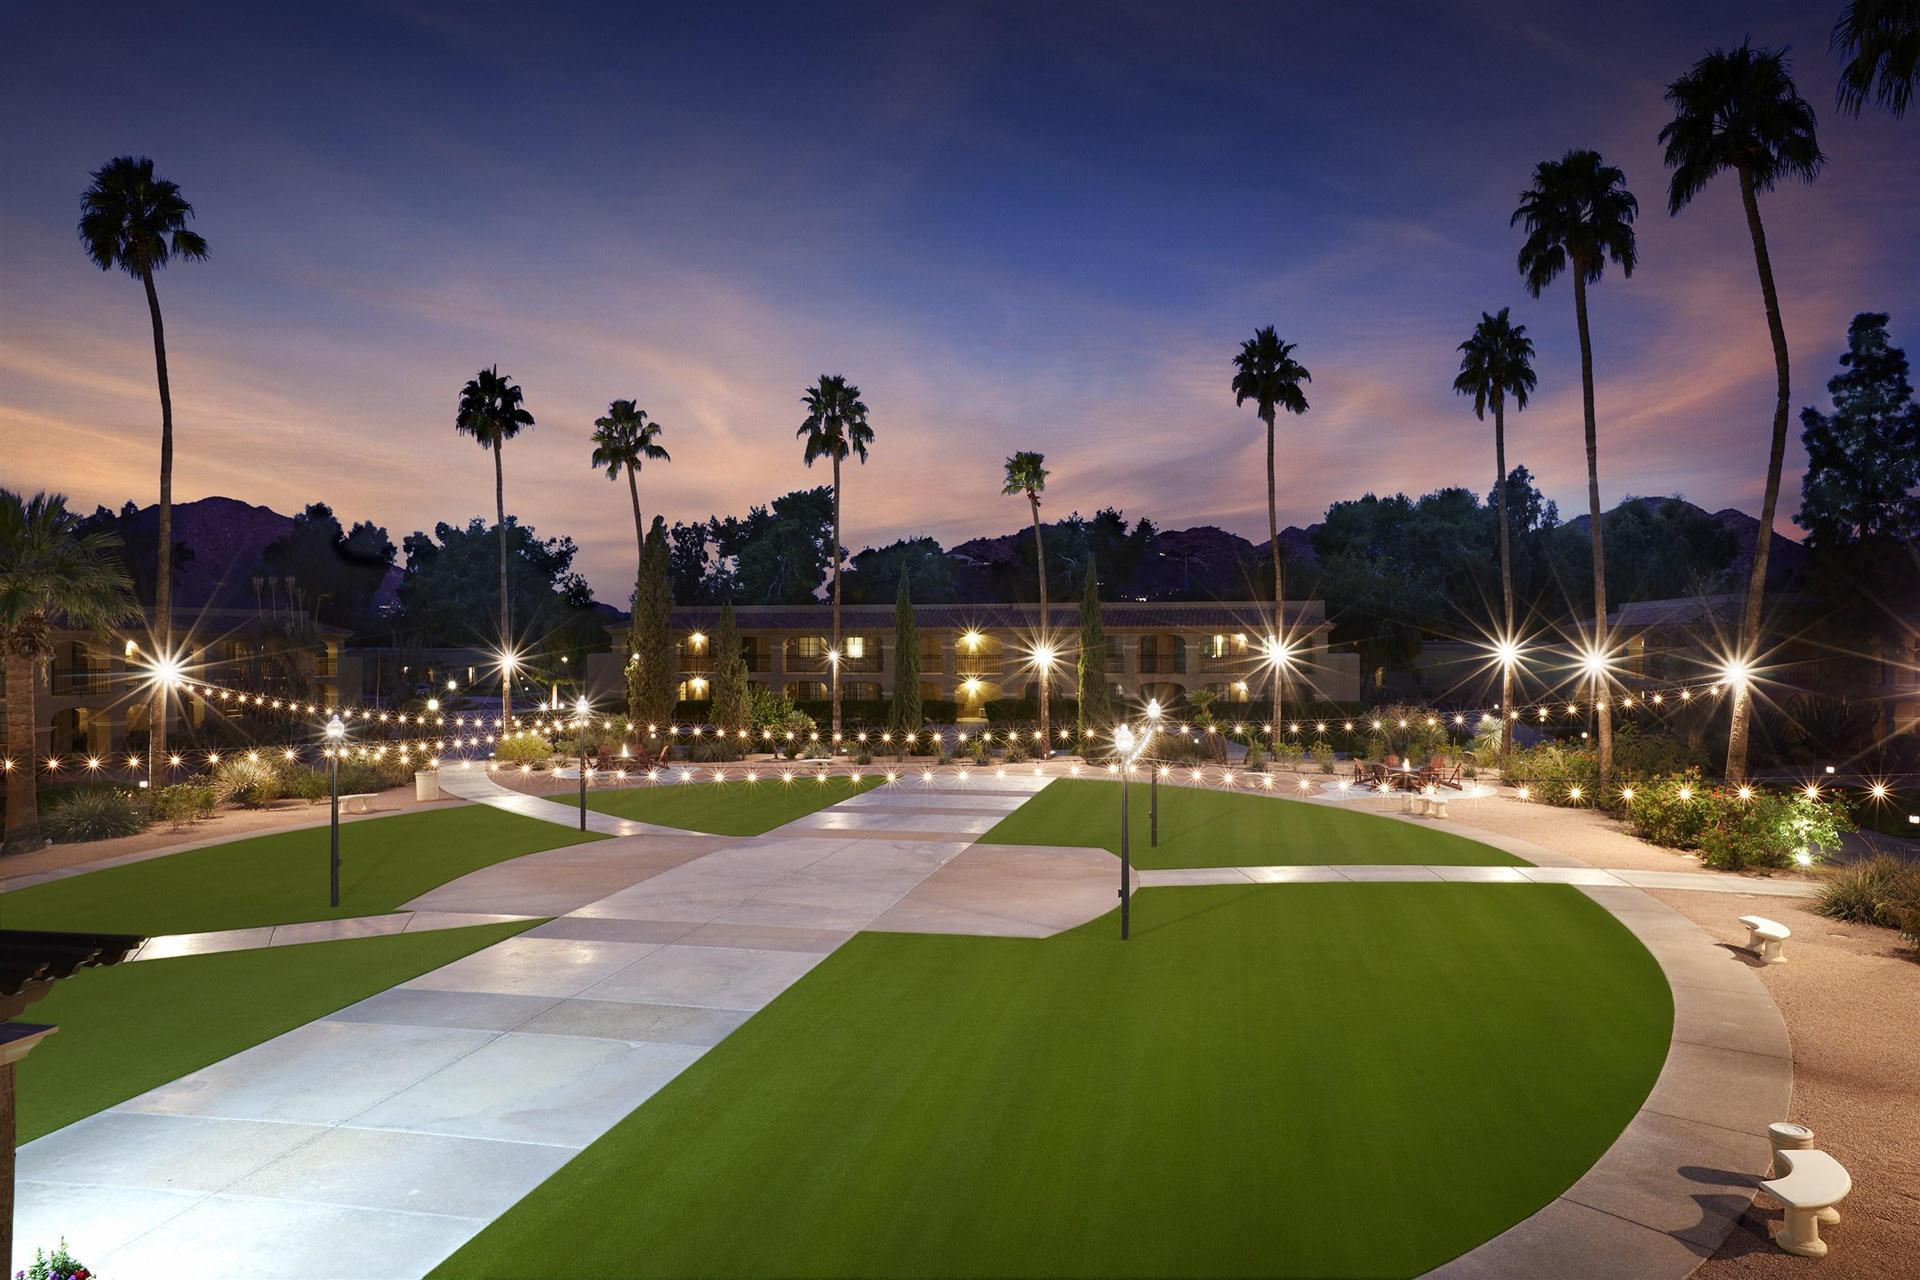 The Scottsdale Plaza Resort & Villas in Scottsdale, AZ